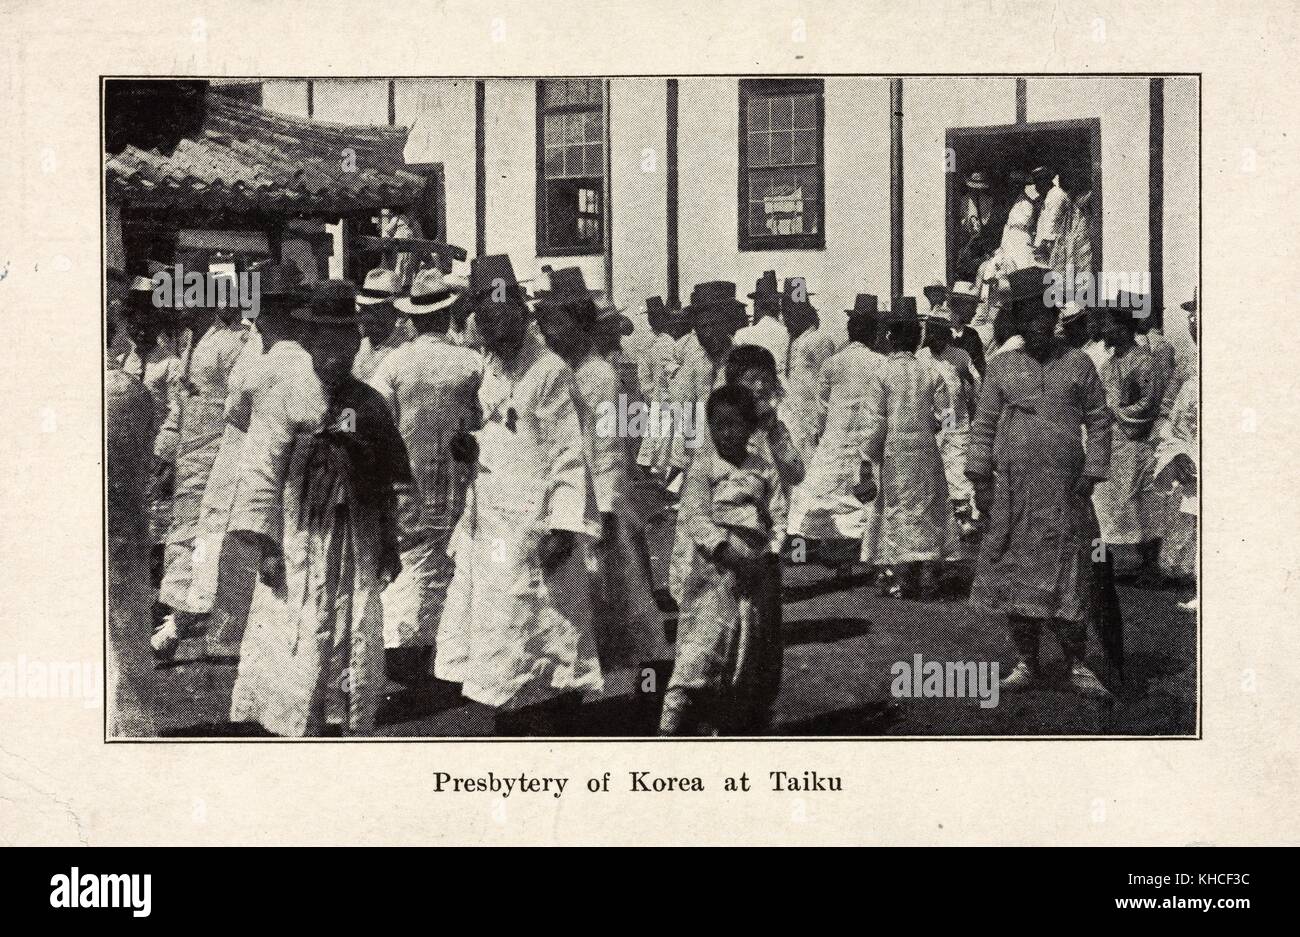 Eine Postkarte zeigt das Presbyterium von Korea in Daegu, das früher als Taiku bekannt war, eine Gruppe von Kirchenältesten, die sich in der römisch-katholischen Erzdiözese Daegu, Südkorea, 1914 versammelt. Aus der New York Public Library. Stockfoto